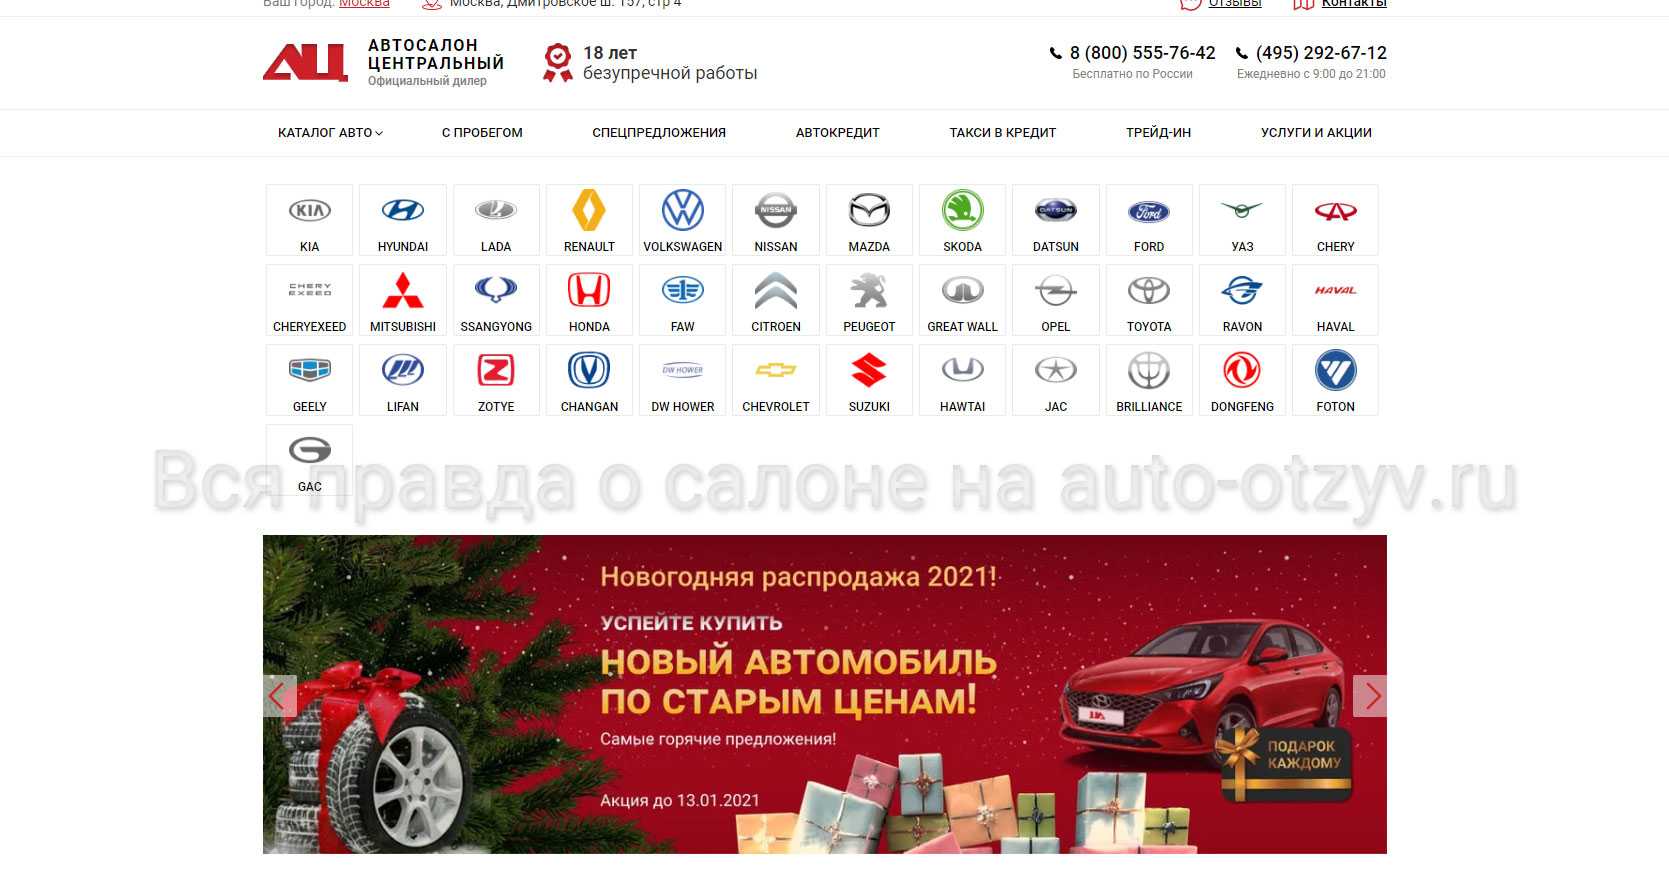 Неофициальный дилер: обман серыми дилерами | avtomobilkredit.ru - все о покупке автомобиля в кредит